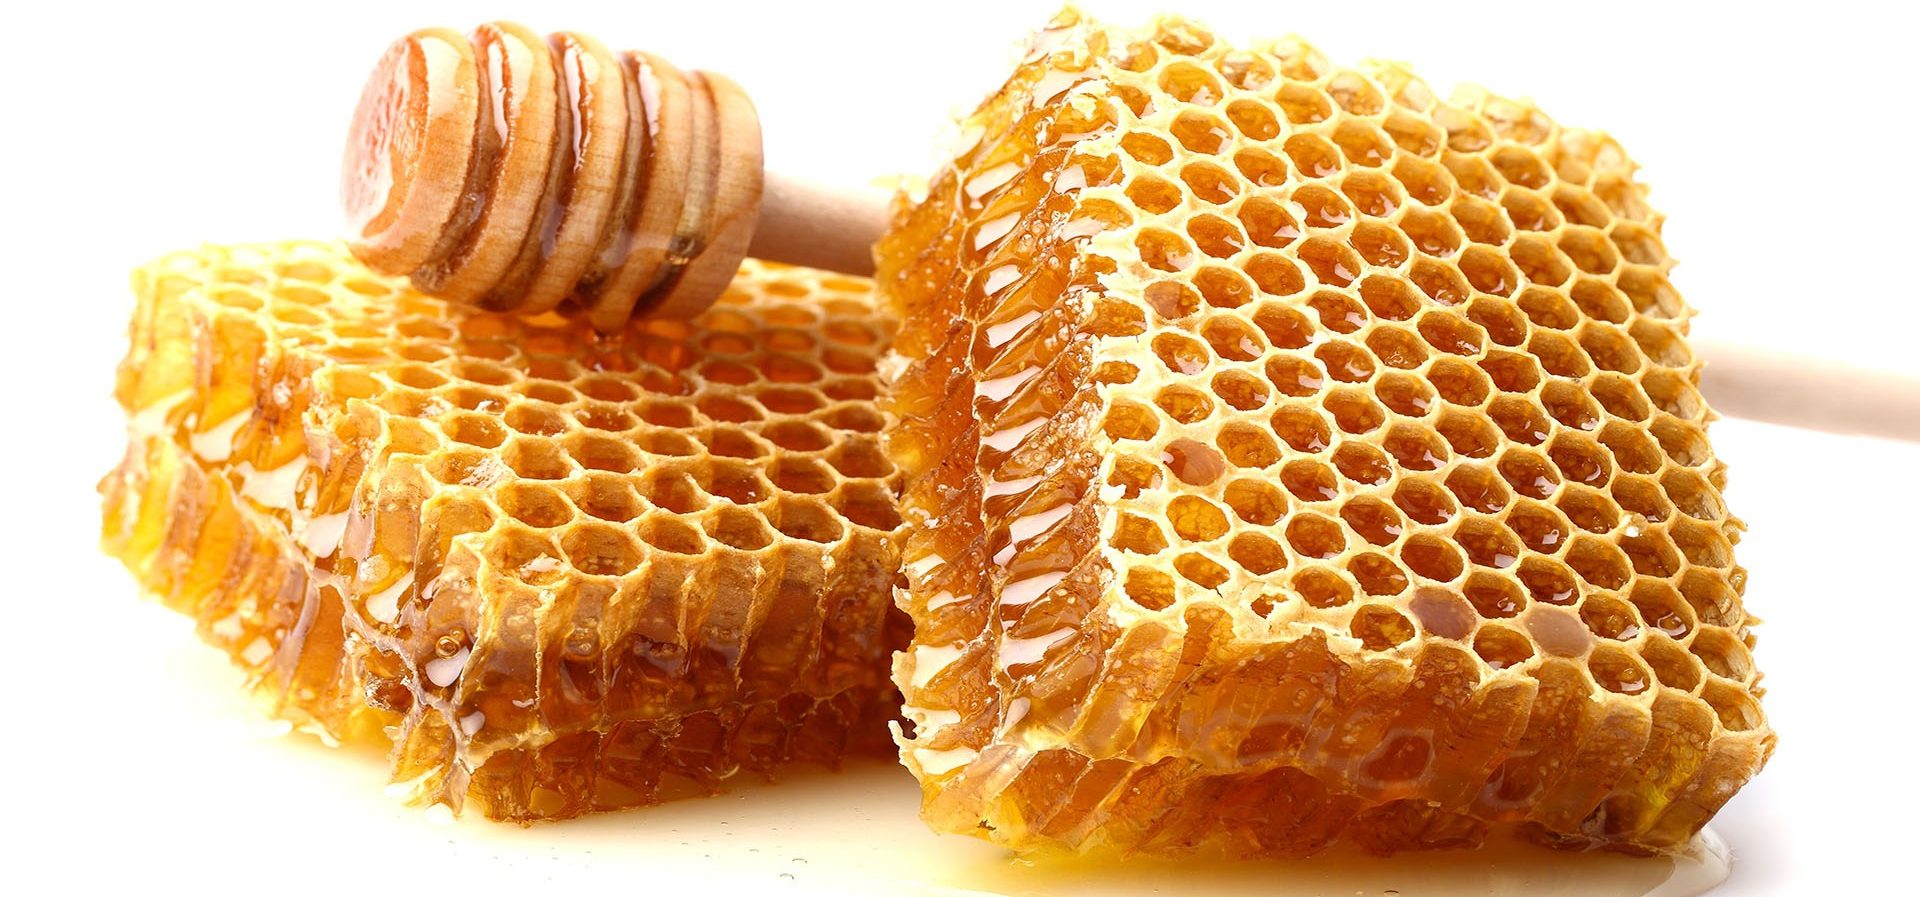 شكل شمع العسل الطبيعي.